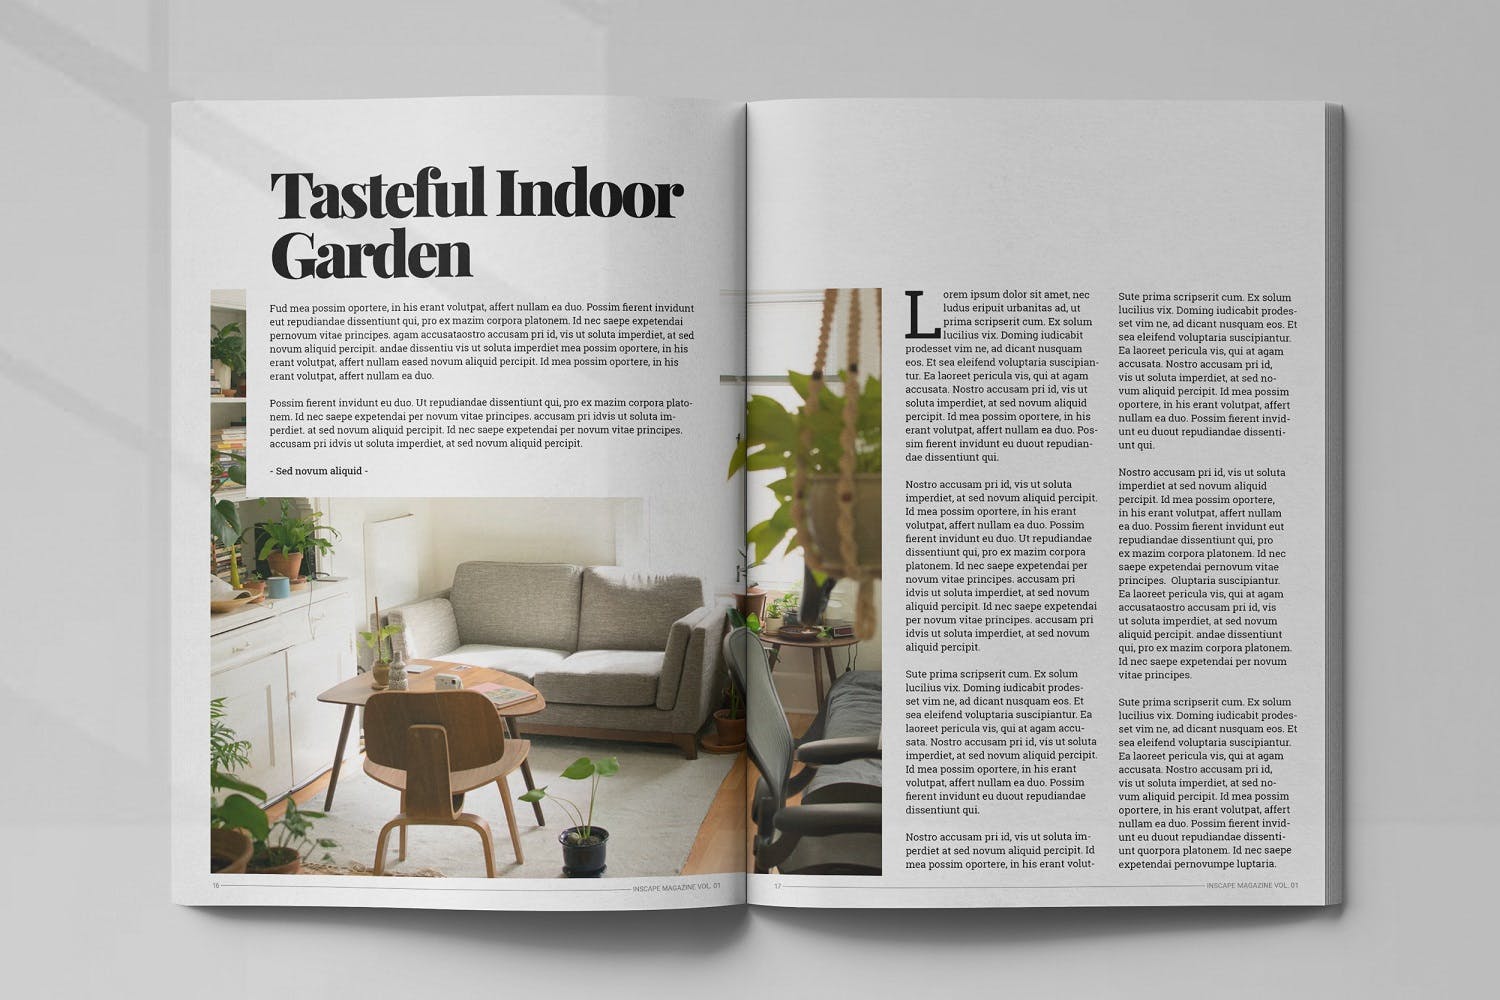 室内设计主题第一素材精选杂志排版设计模板 Inscape Interior Magazine插图(8)